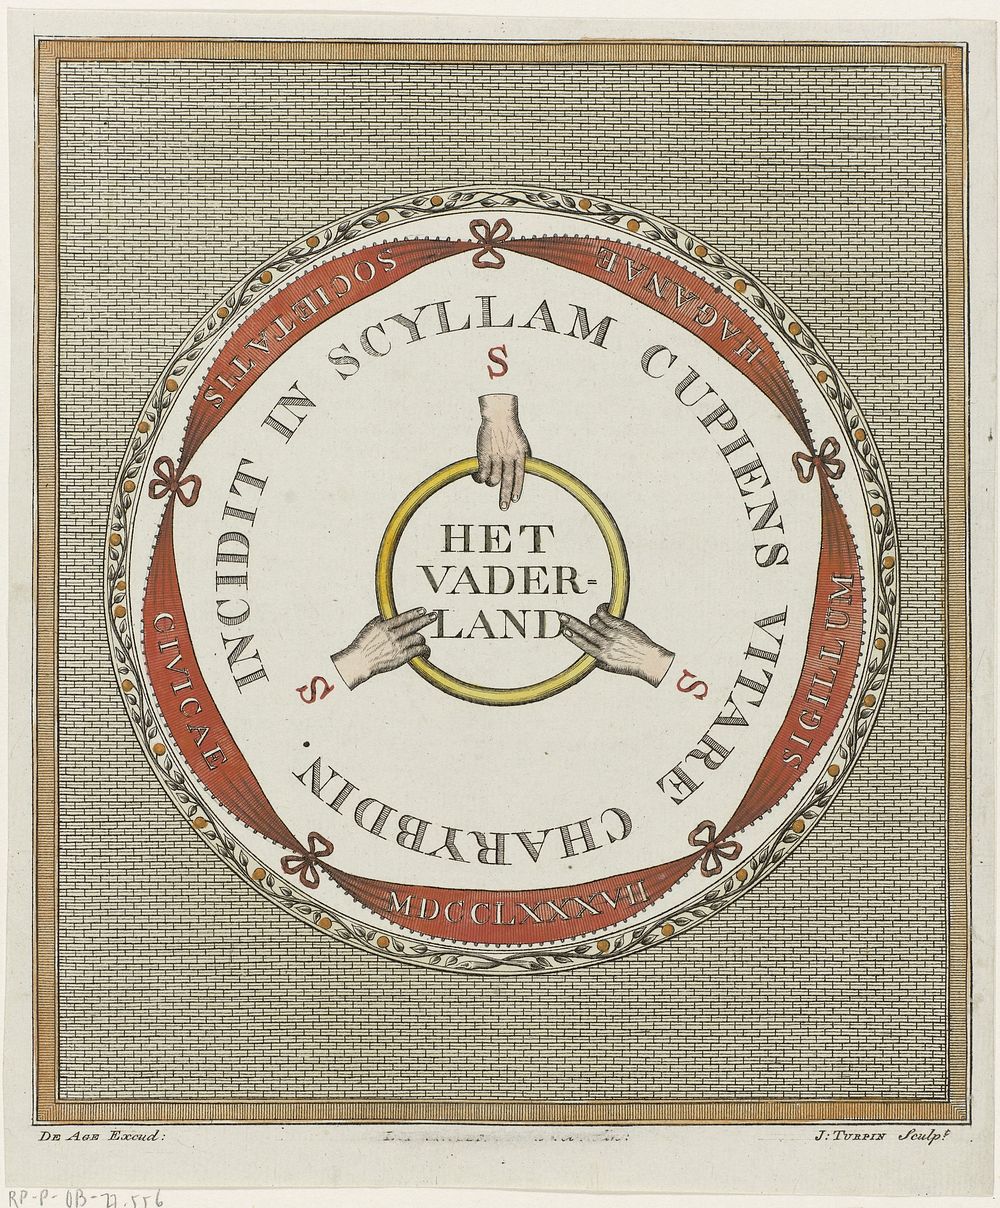 Zegel van de Oprechte Vaderlandsche Sociëteit van Den Haag, opgericht in 1787 (1787) by Jacobus Turpin, Duncan Macalester de…